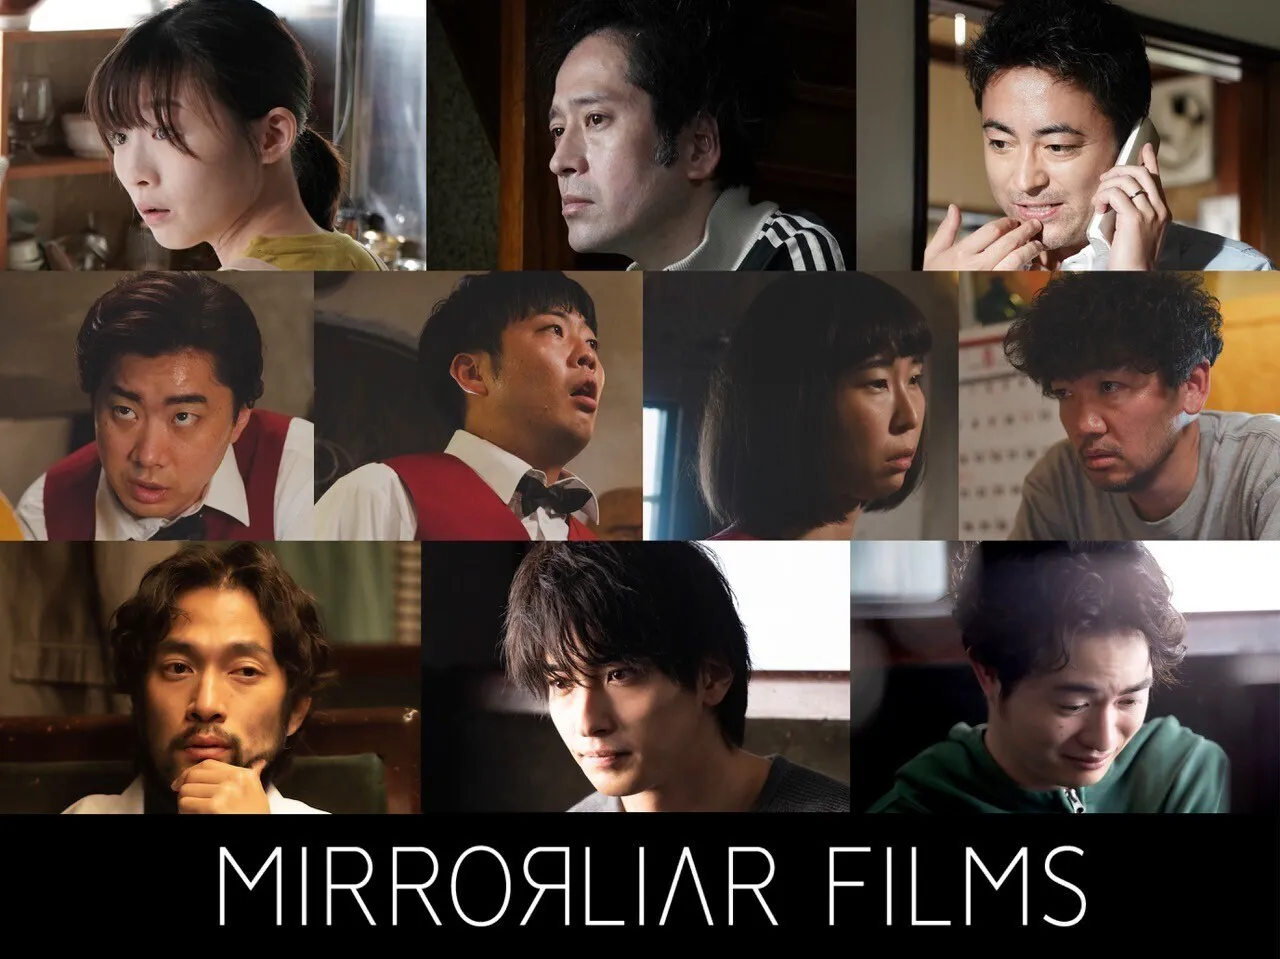 短編映画制作プロジェクト「MIRRORLIAR FILMS」のシリーズ全作品、オリジナル作品をLeminoで配信スタート